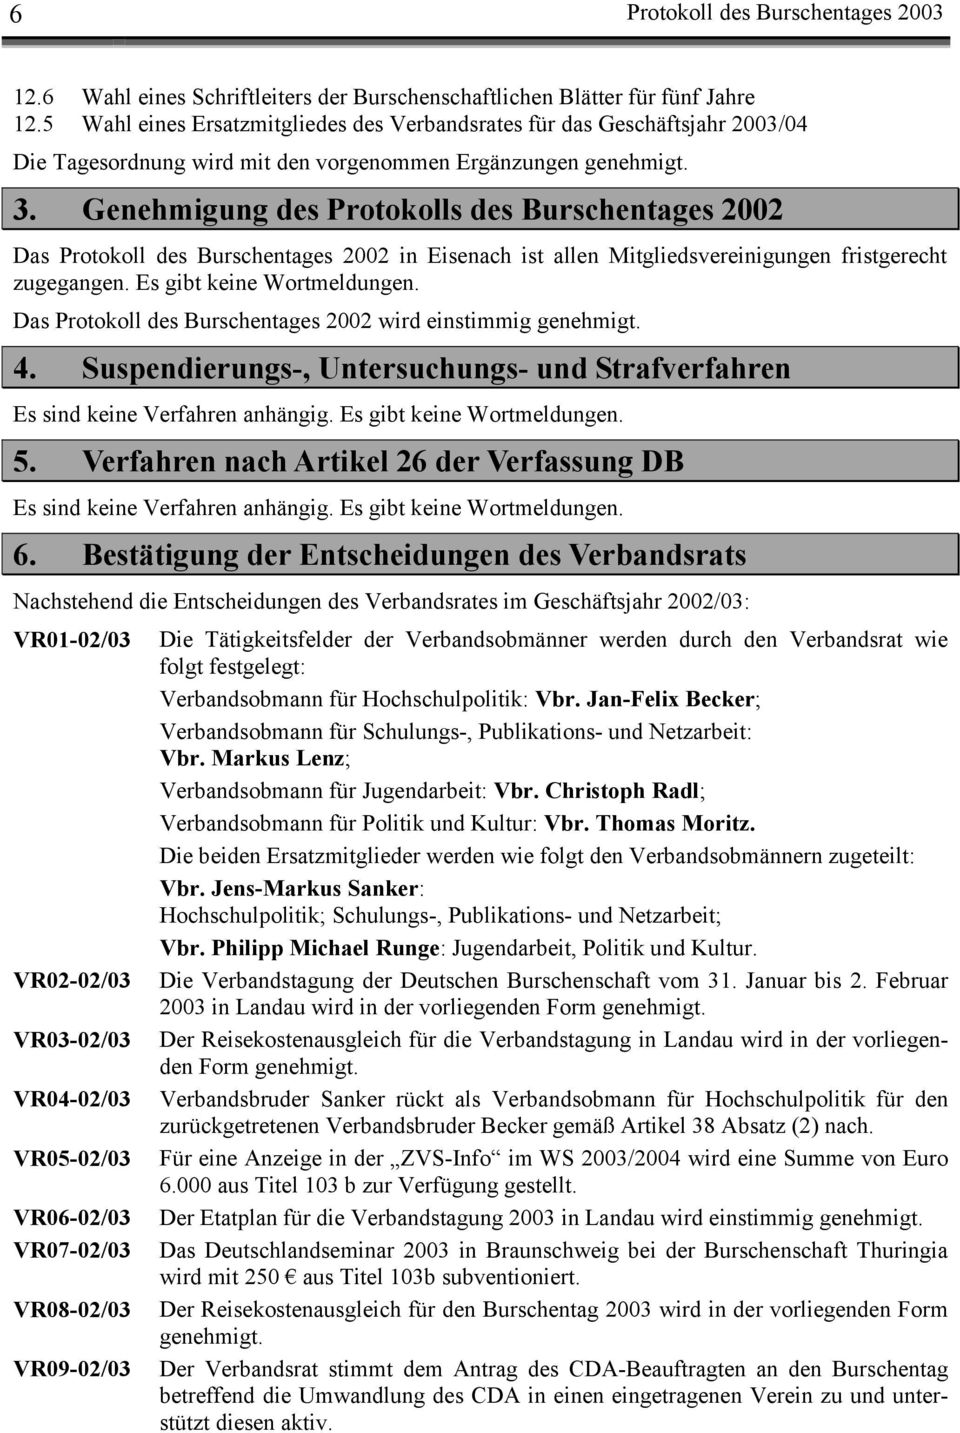 Genehmigung des Protokolls des Burschentages 2002 Das Protokoll des Burschentages 2002 in Eisenach ist allen Mitgliedsvereinigungen fristgerecht zugegangen. Es gibt keine Wortmeldungen.